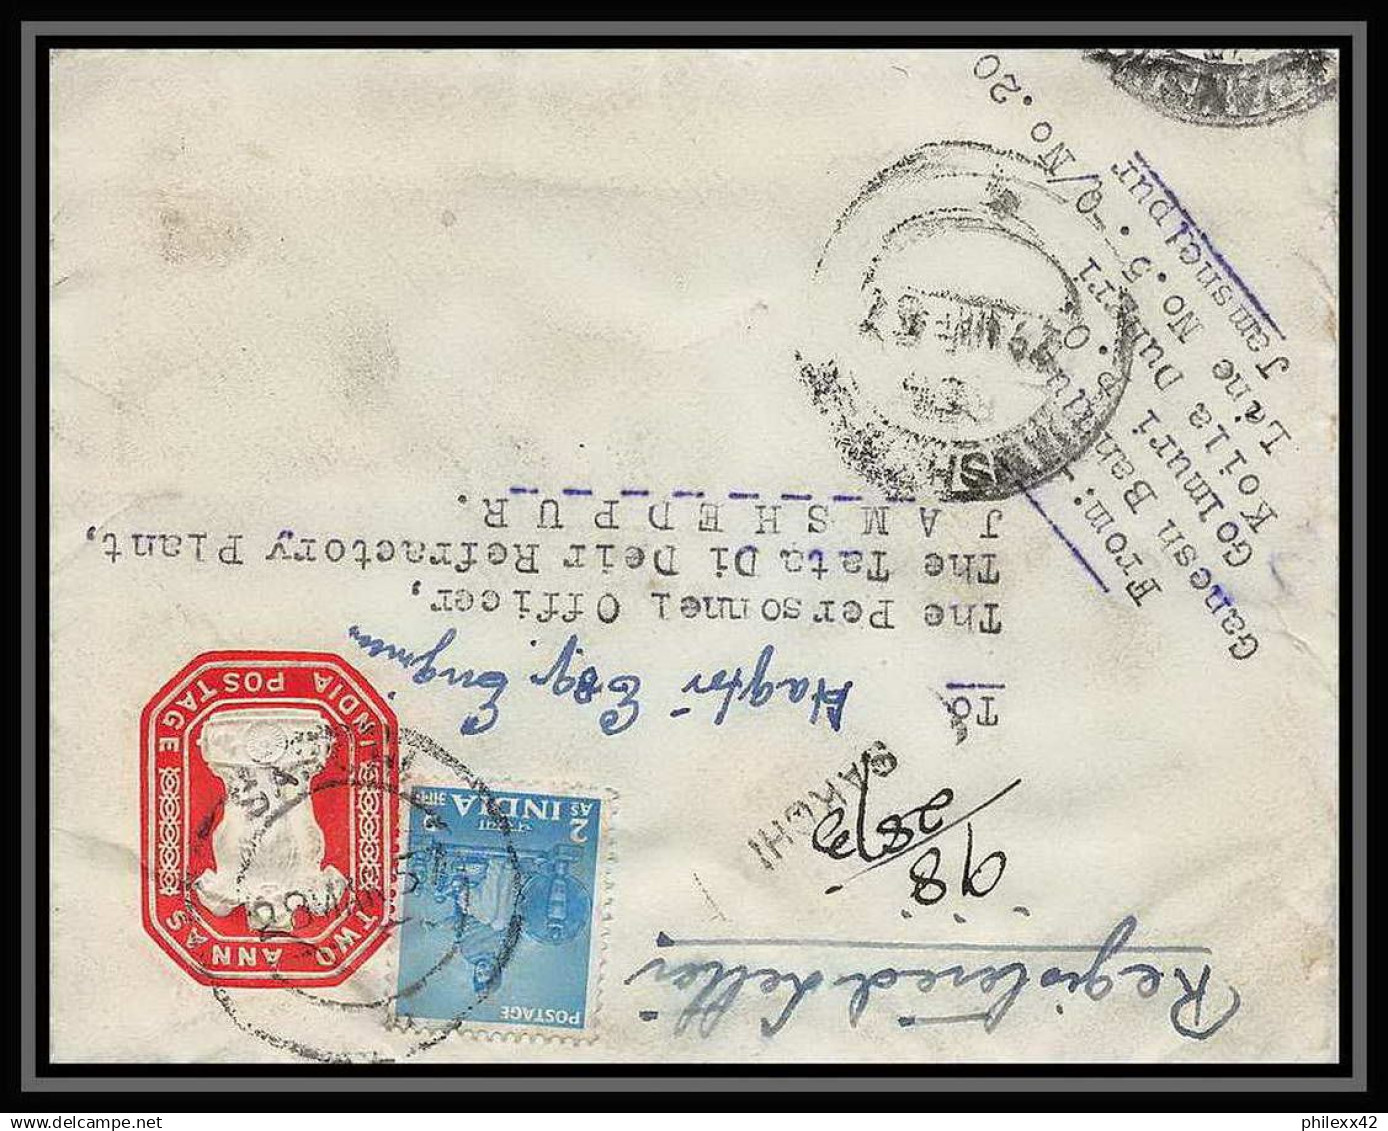 1943/ Inde (India) Entier Stationery Enveloppe (cover) N°21 Registered 1957 - Buste